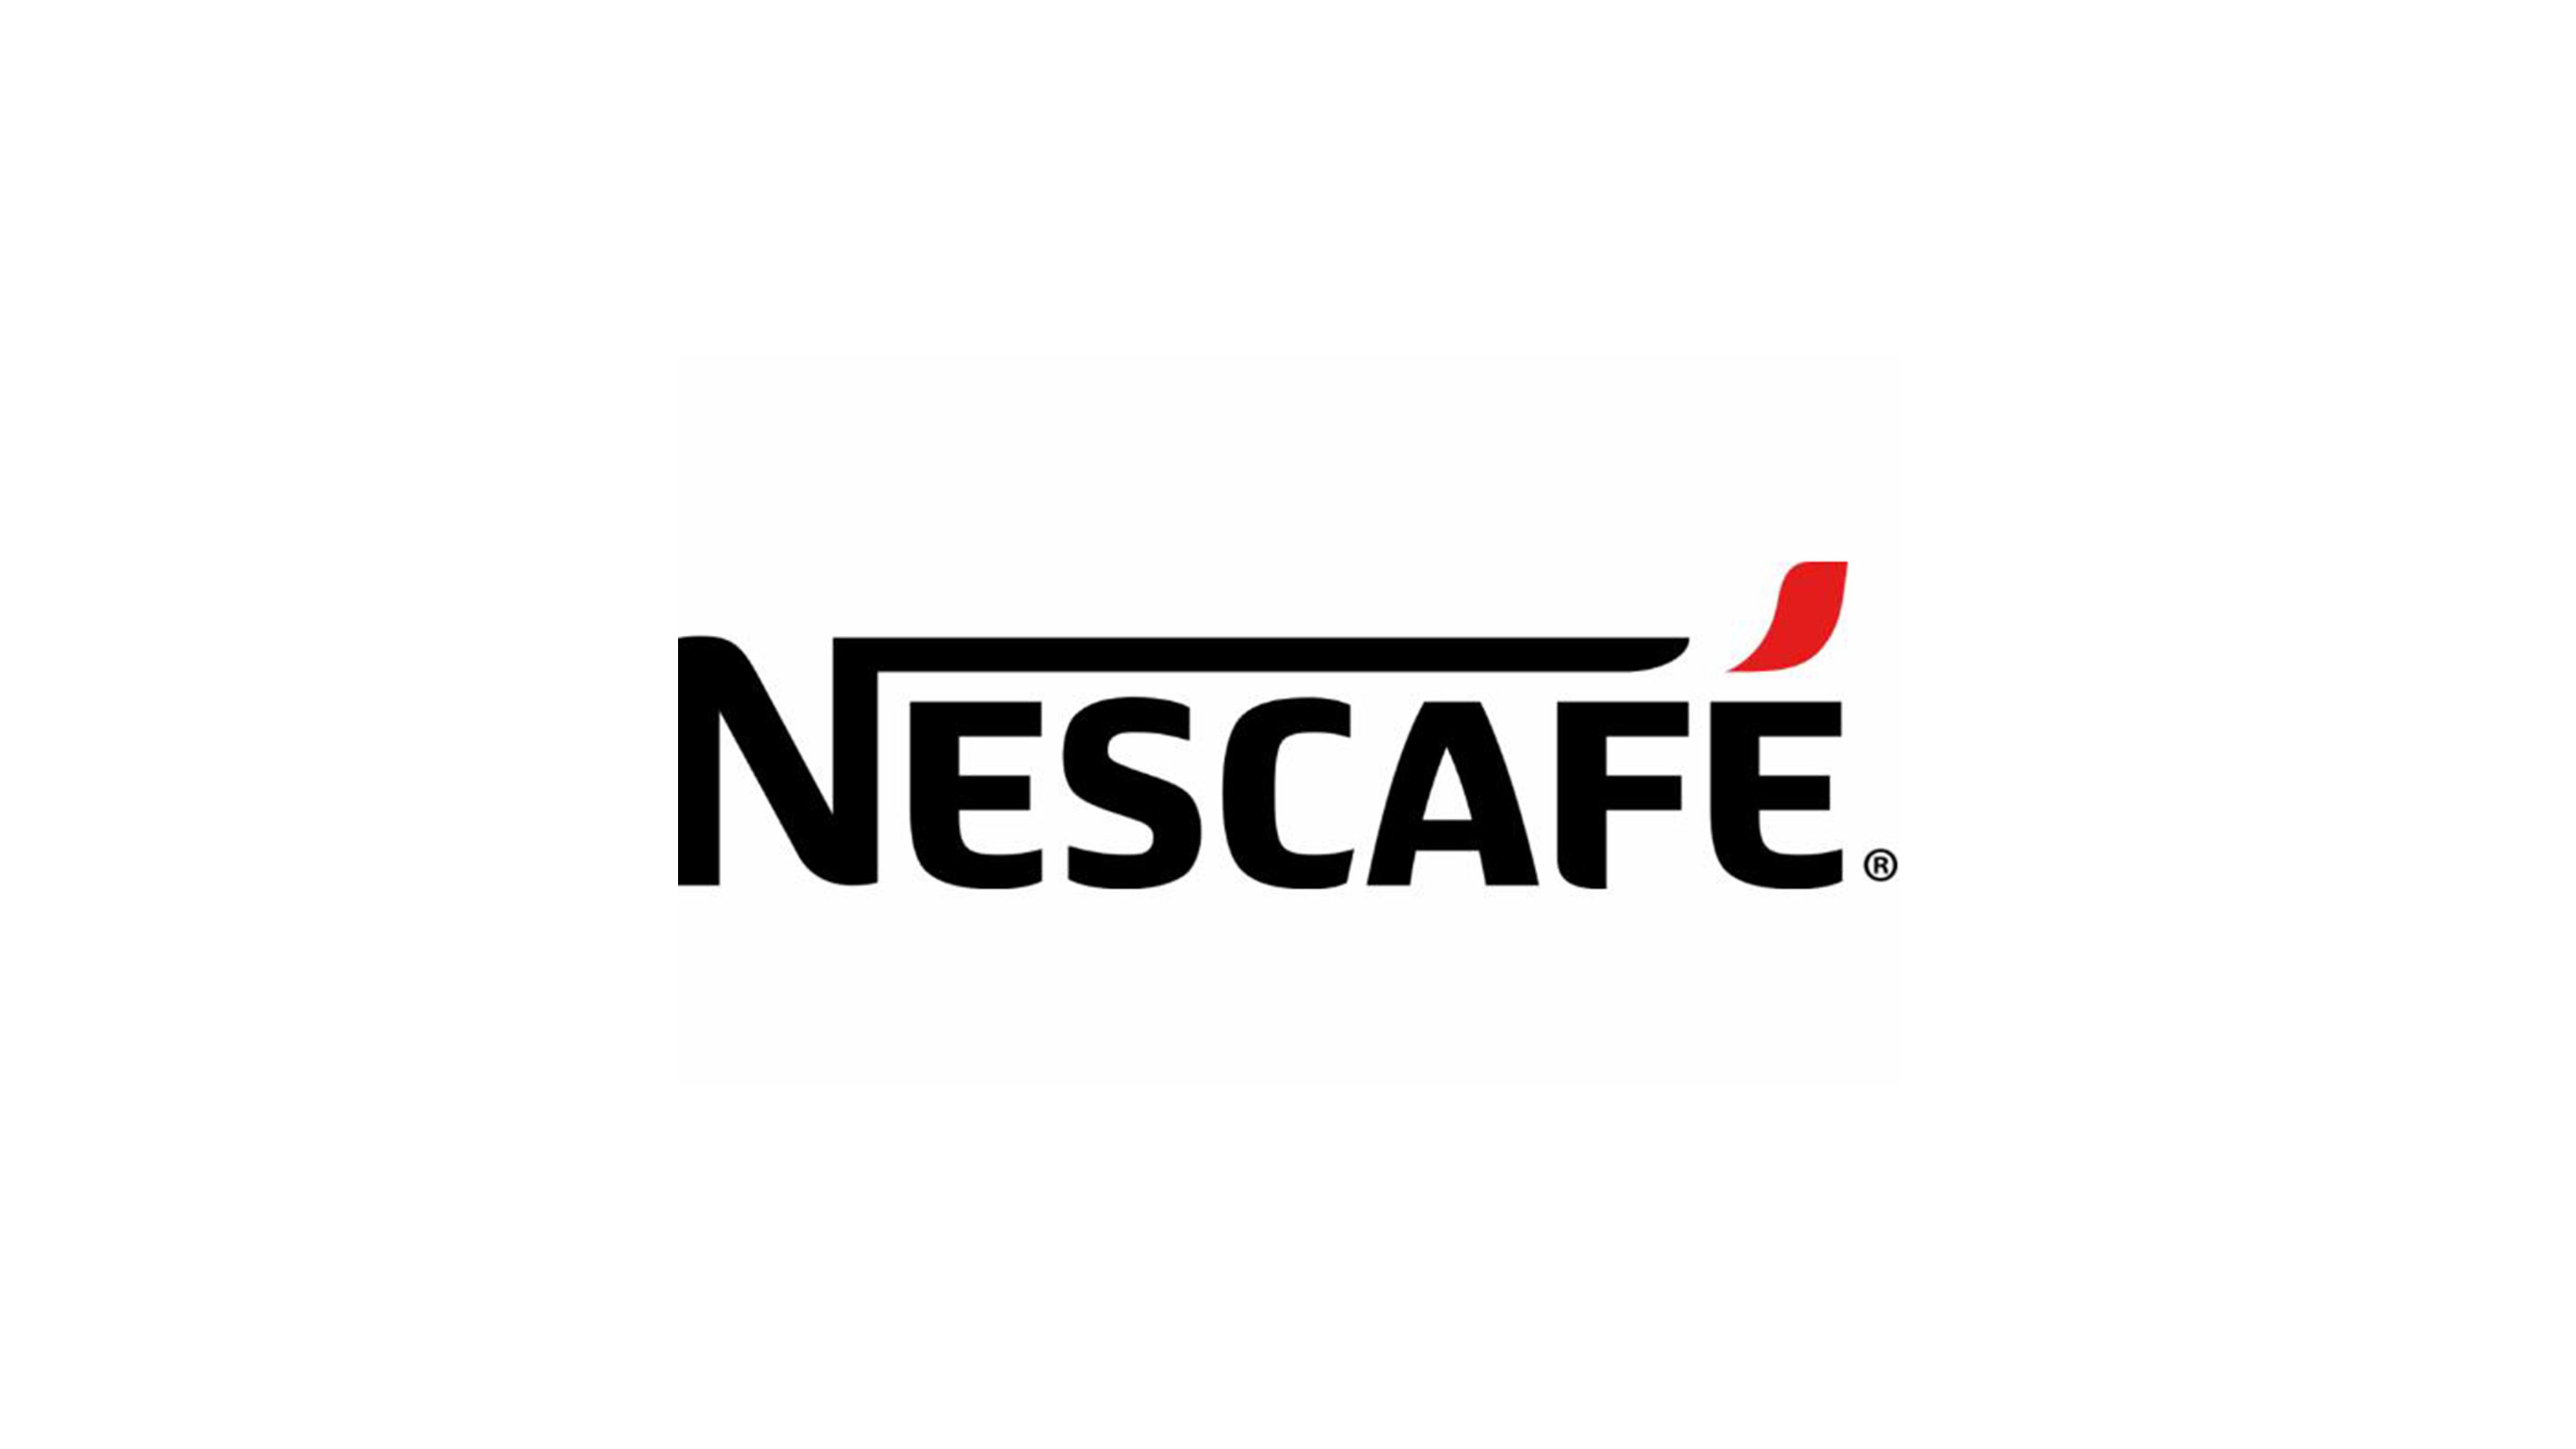 雀巢咖啡logo图片含义/演变/变迁及品牌介绍 - logo